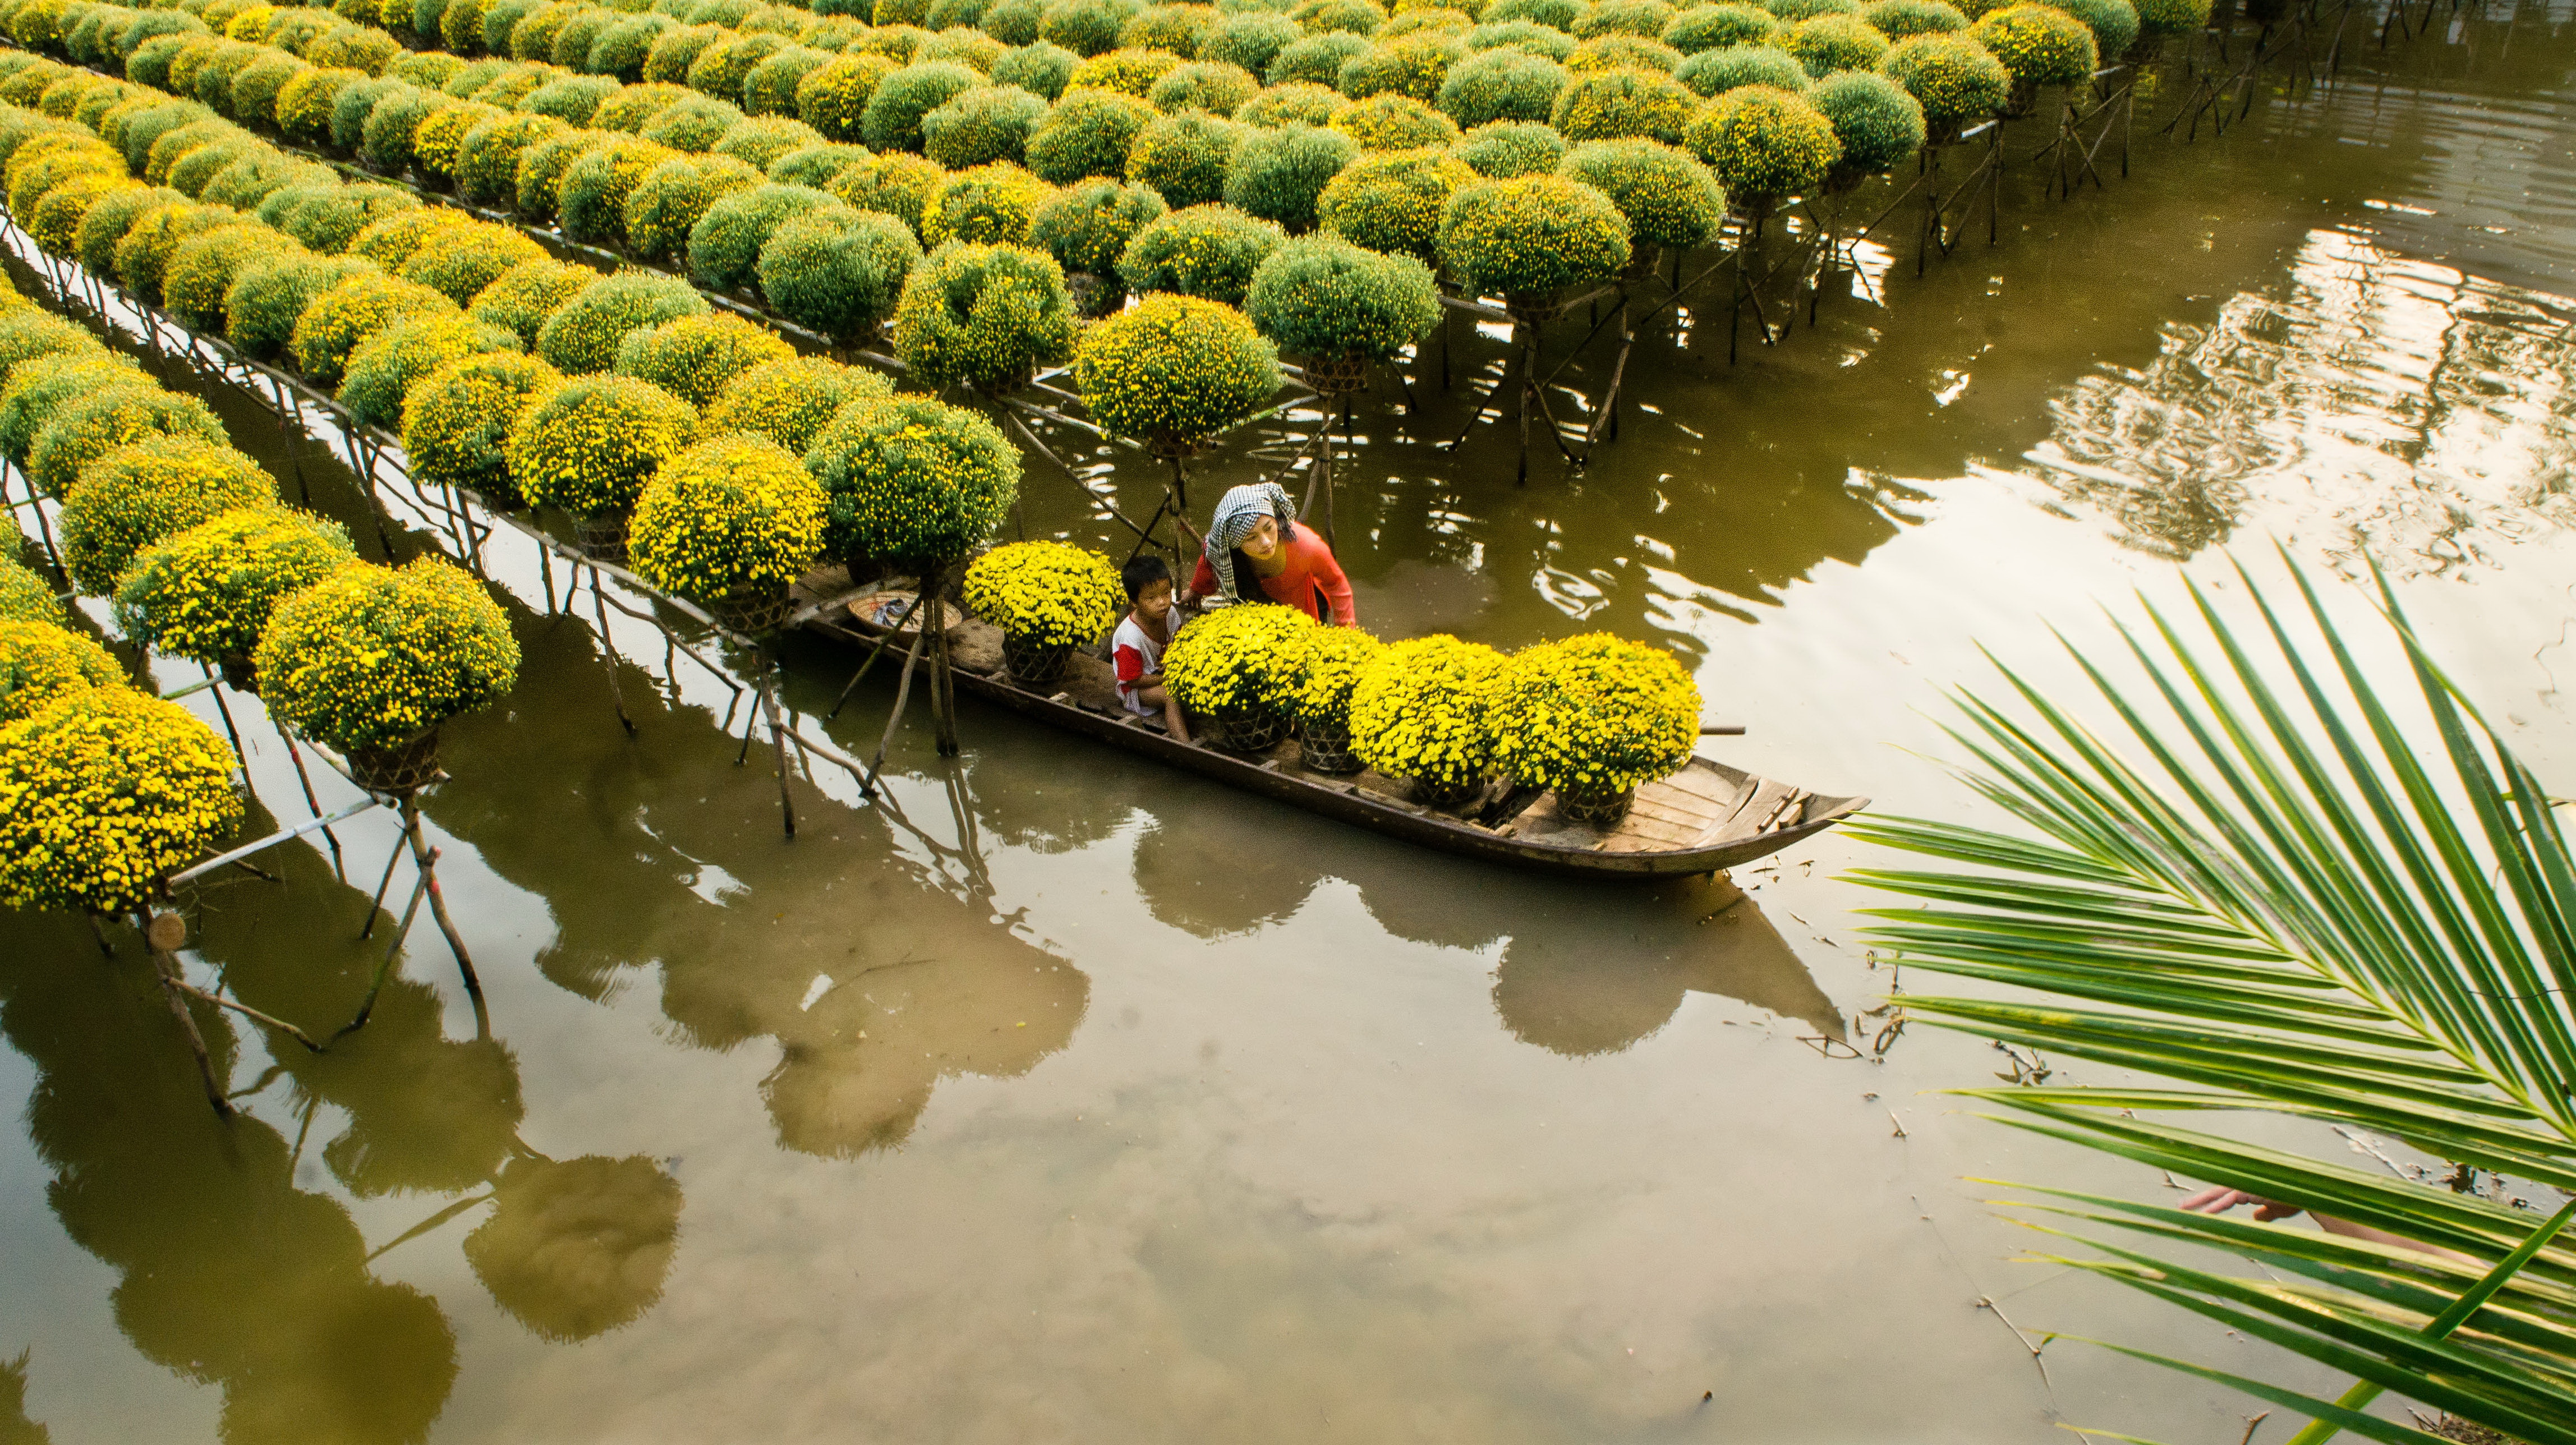 Mekong Delta flower city in full bloom for Tet